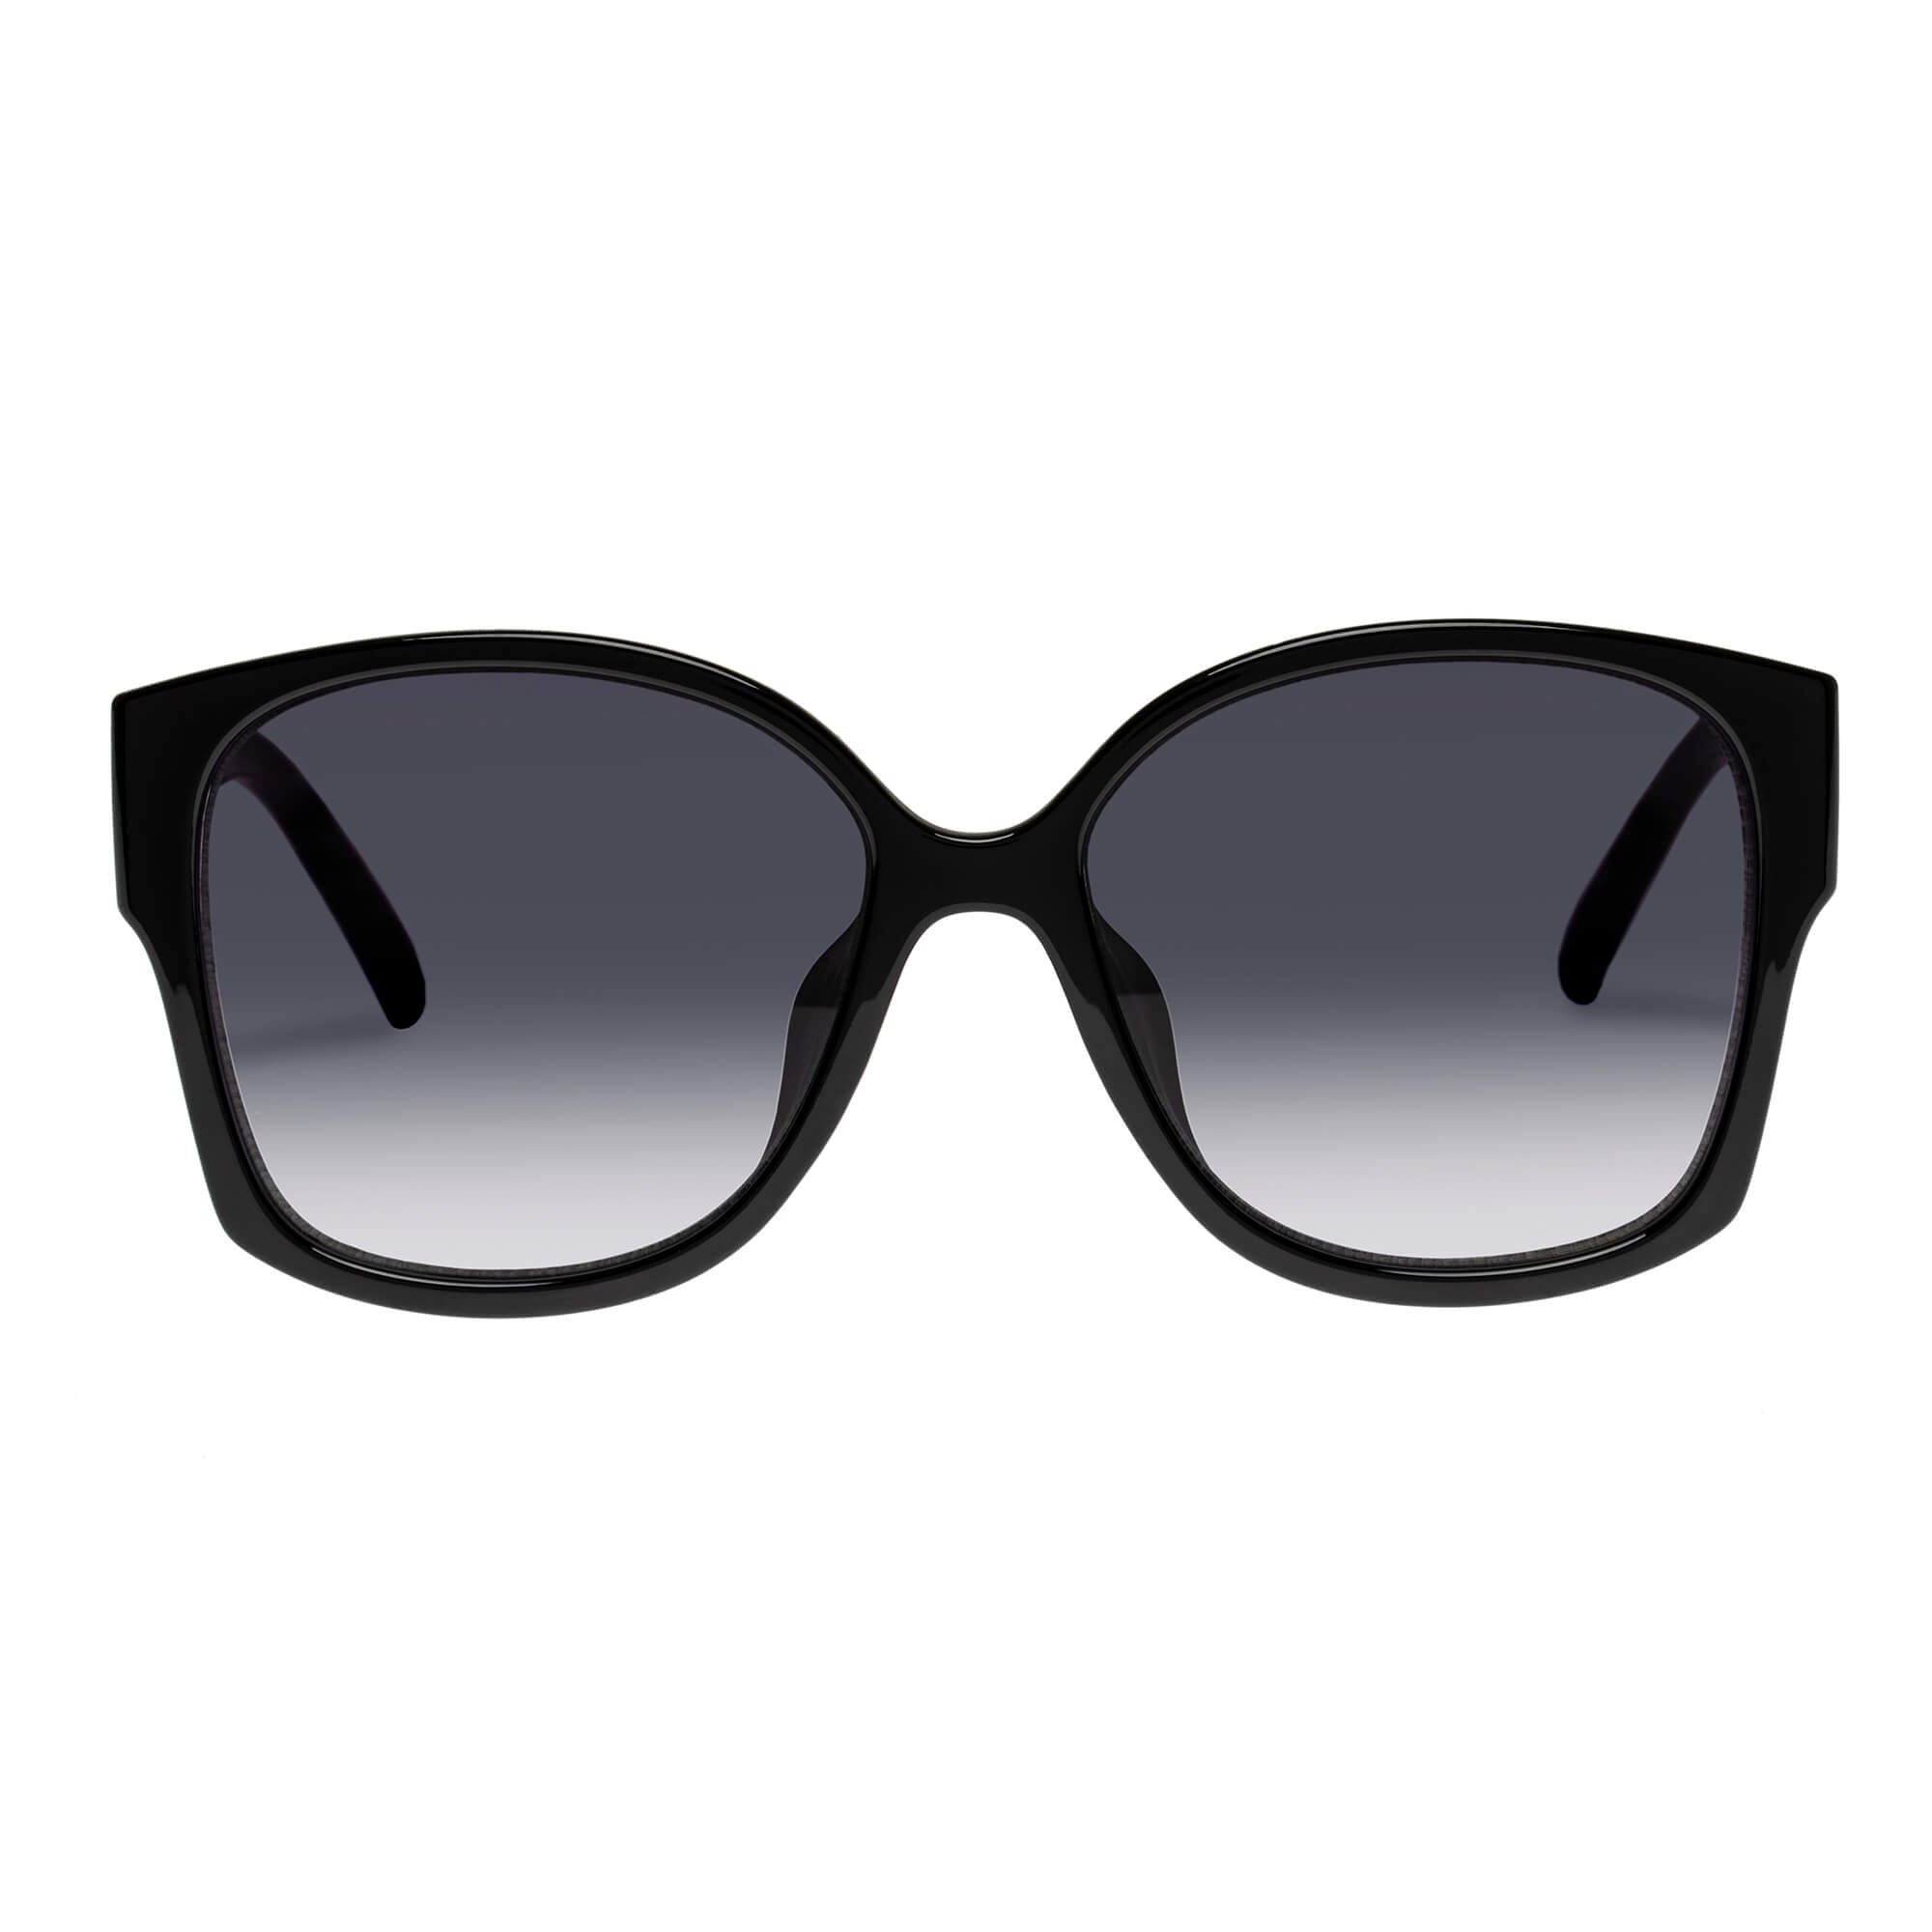 Paranormal Alt Fit Black Uni Sex Sunglasses Le Specs